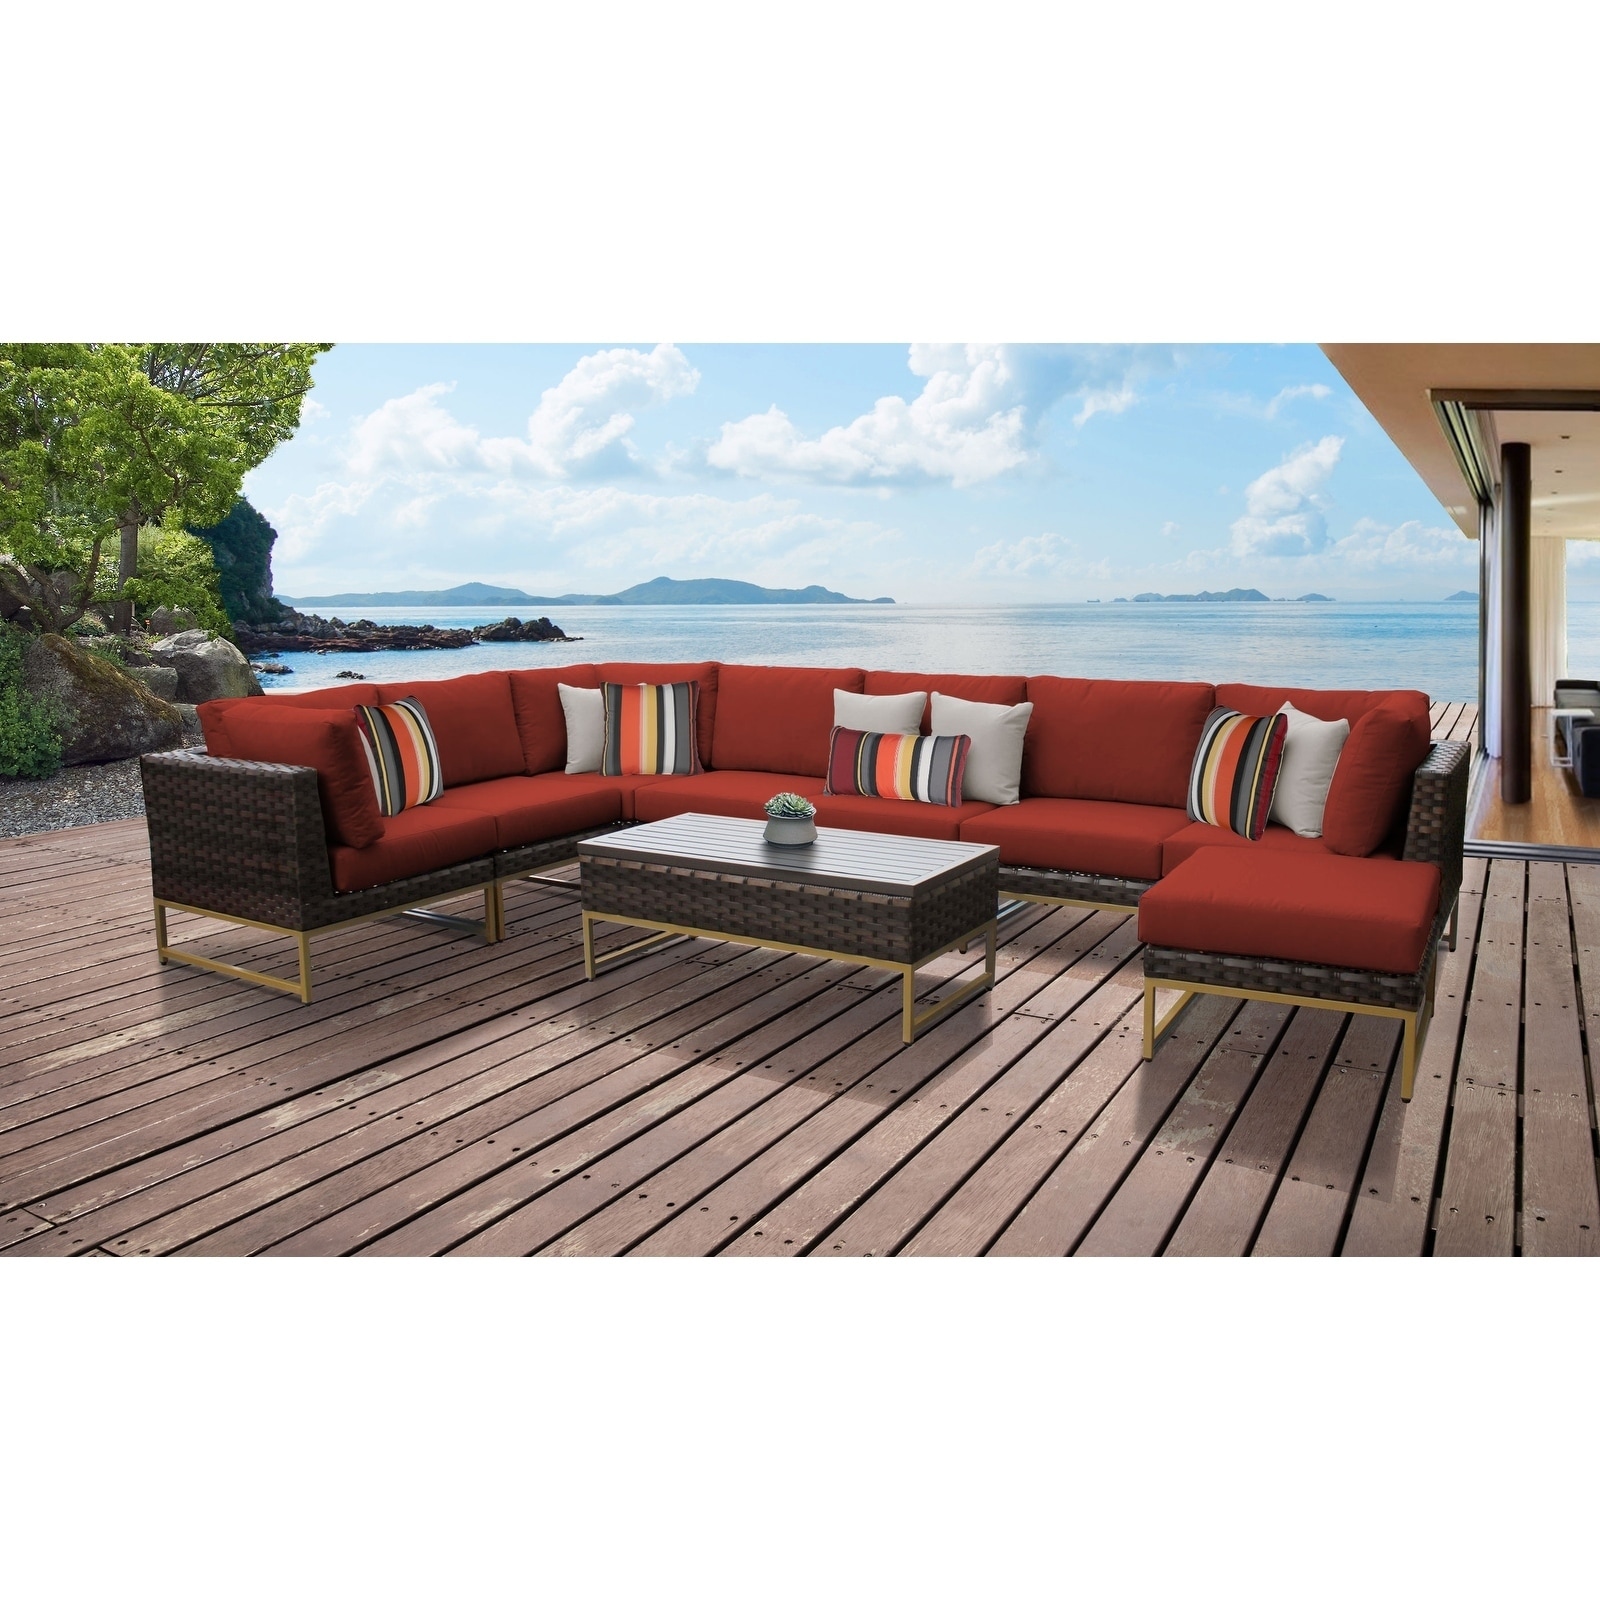 Amalfi 9 Piece Outdoor Wicker Patio Furniture Set 02a